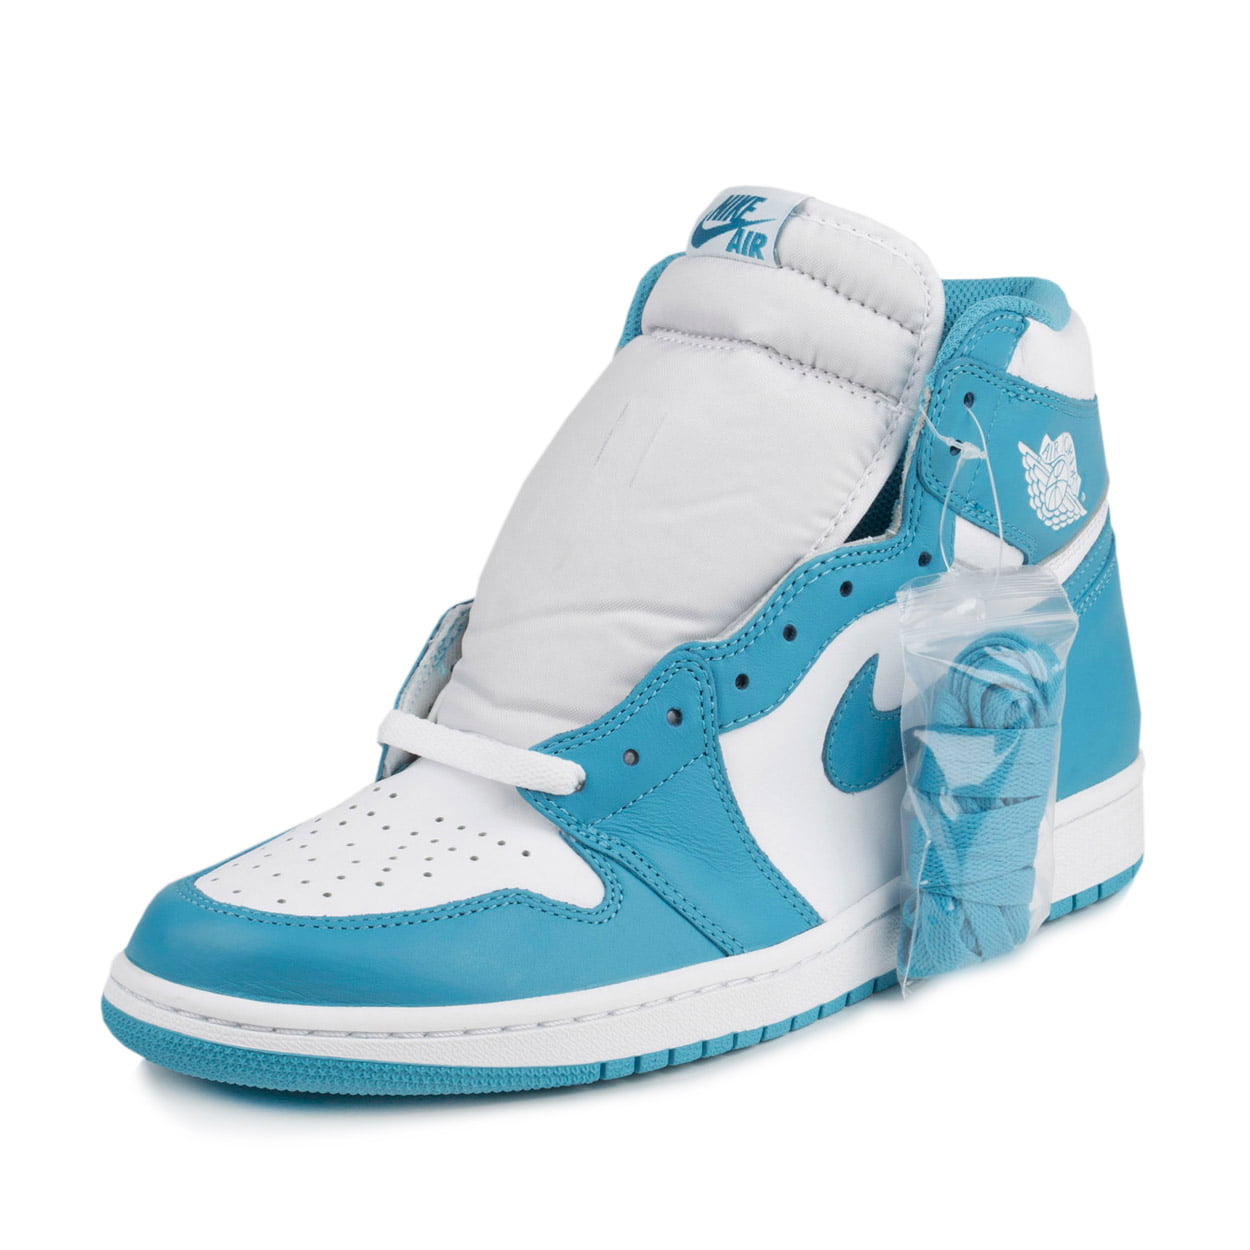 Nike Mens Air Jordan 1 Retro High OG "UNC" Powder Blue Walmart.com